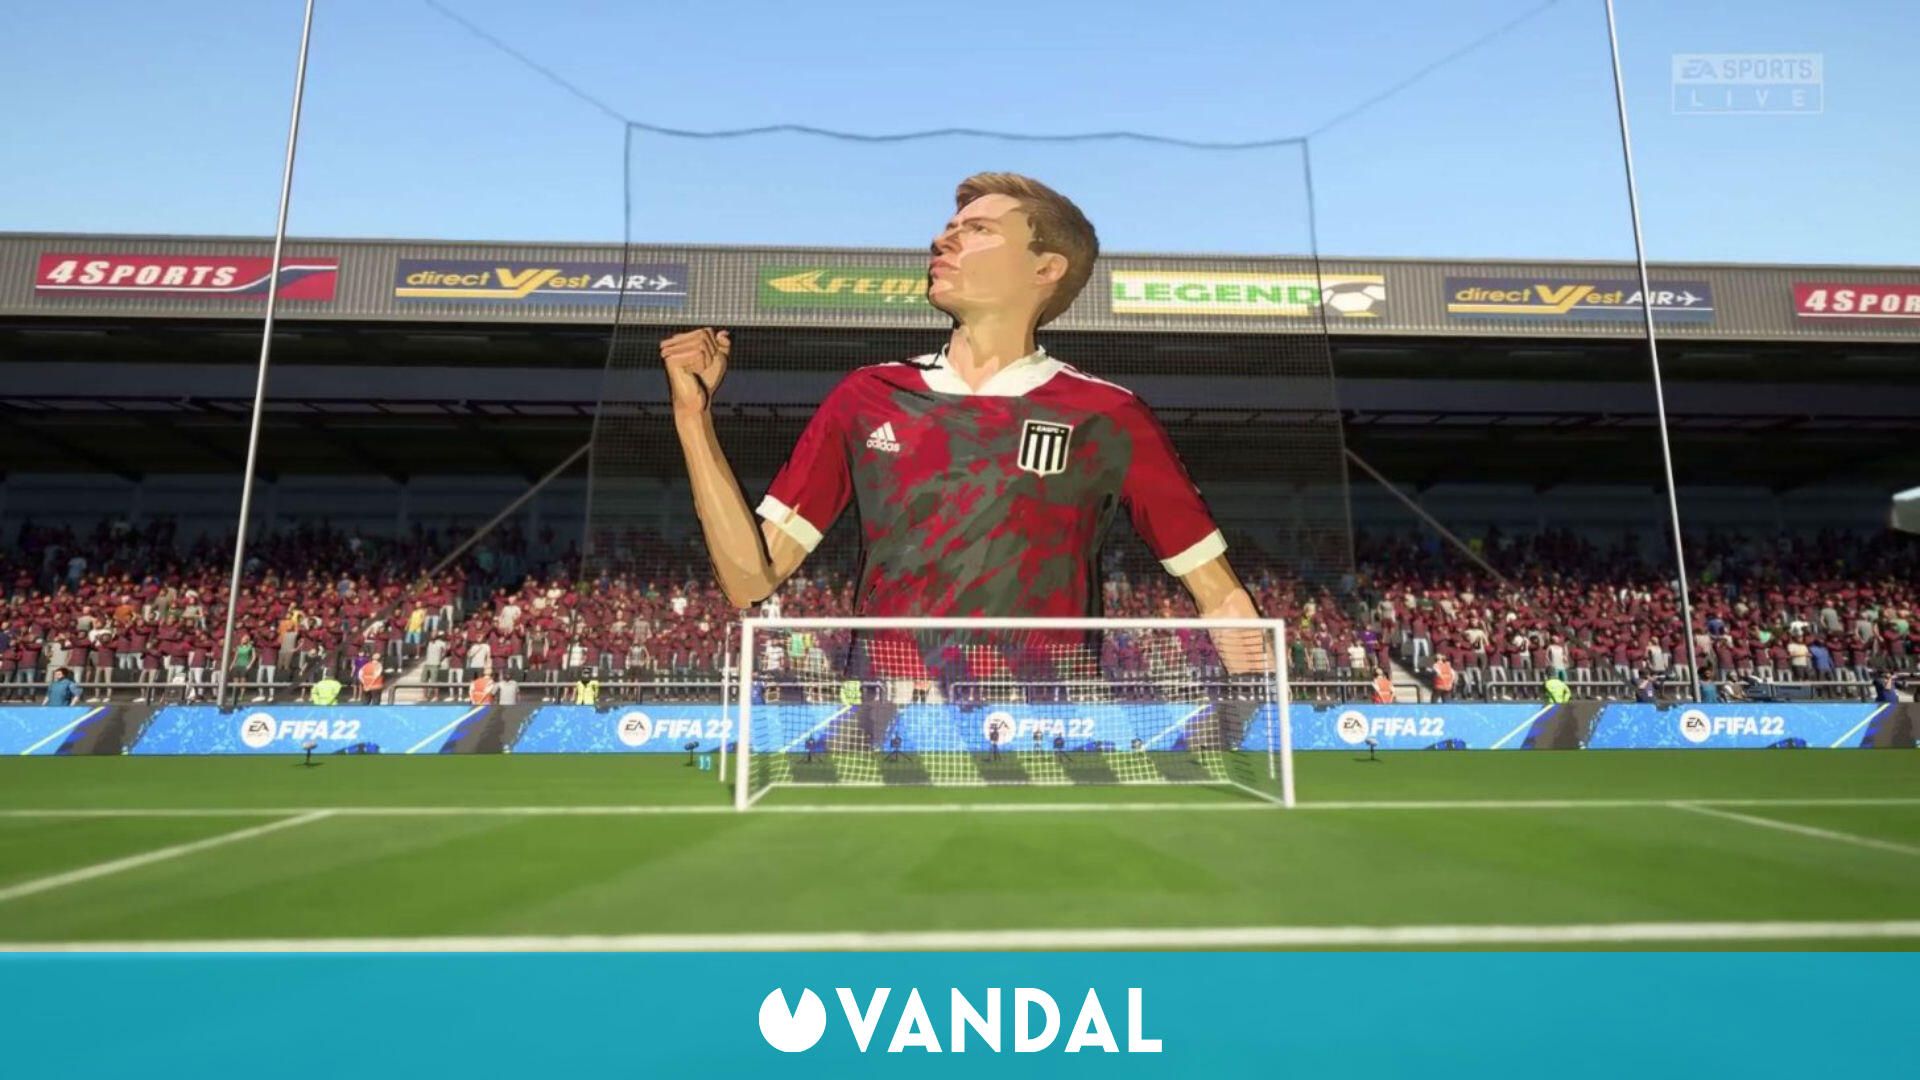 FIFA 22 permitirá crear equipos, estadios y equipaciones en su Modo Carrera  - Vandal